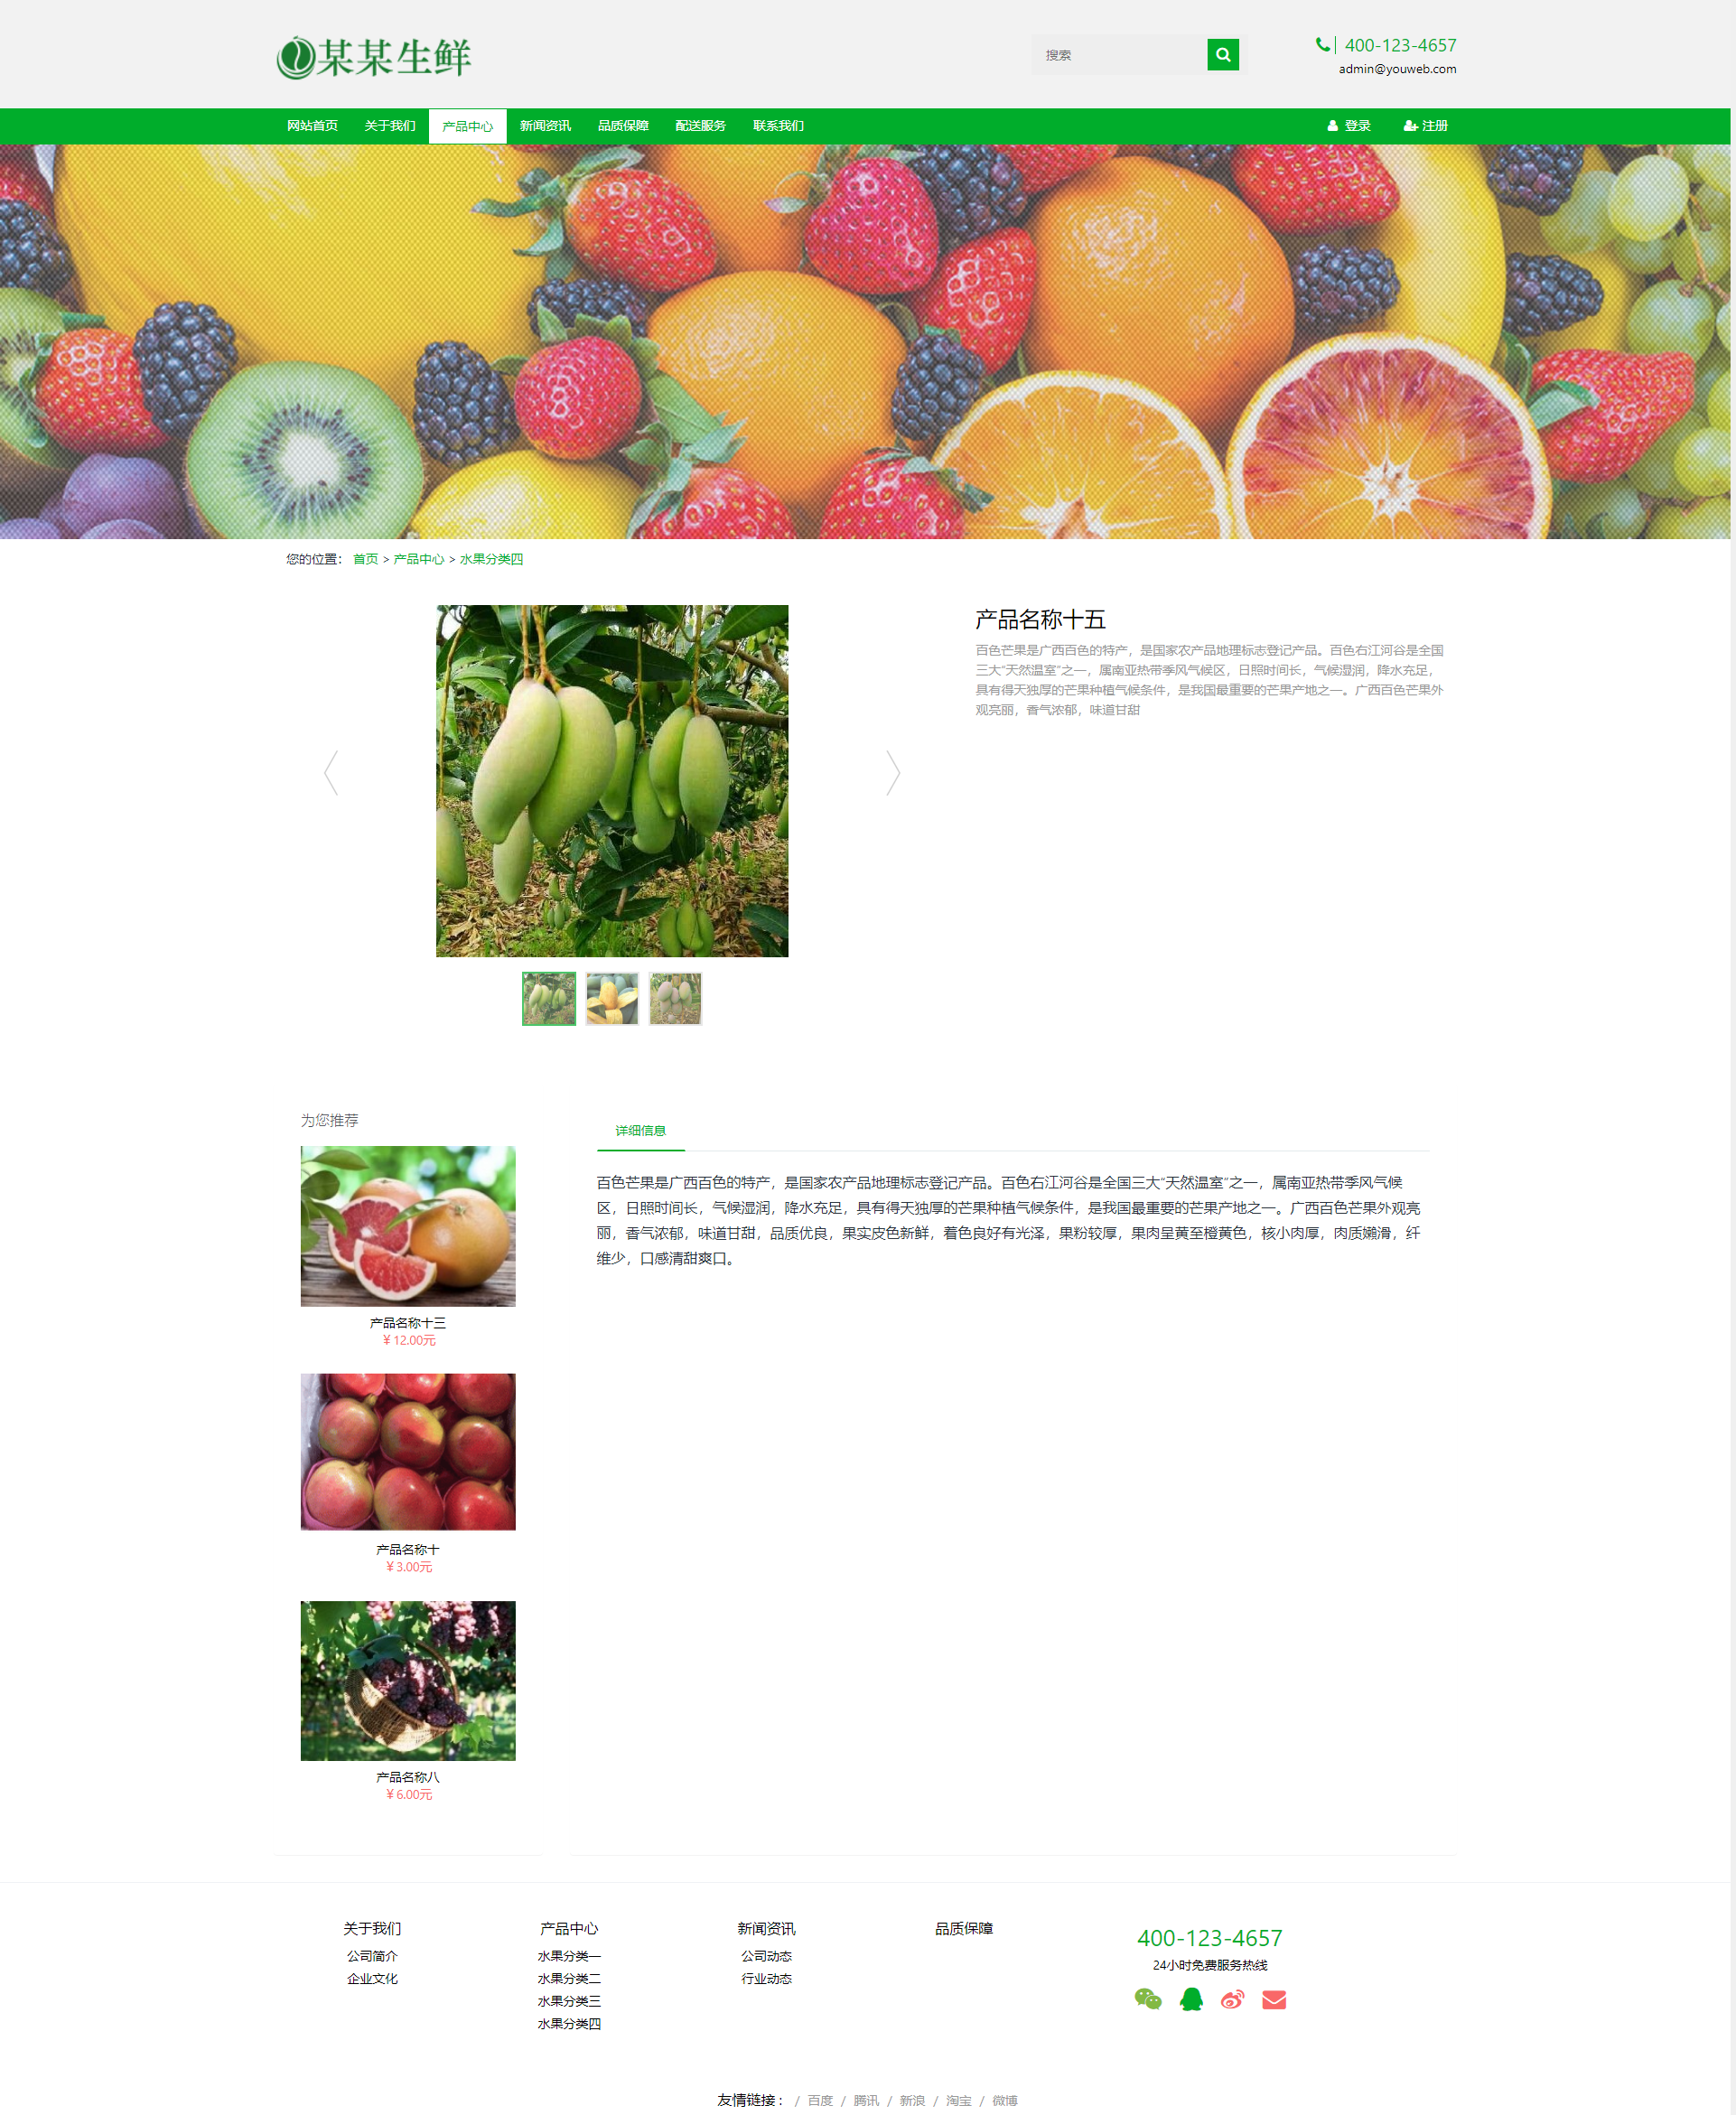 亲测丨易优CMS响应式水果生鲜网站绿色企业产品展示新闻发布模板源码下载